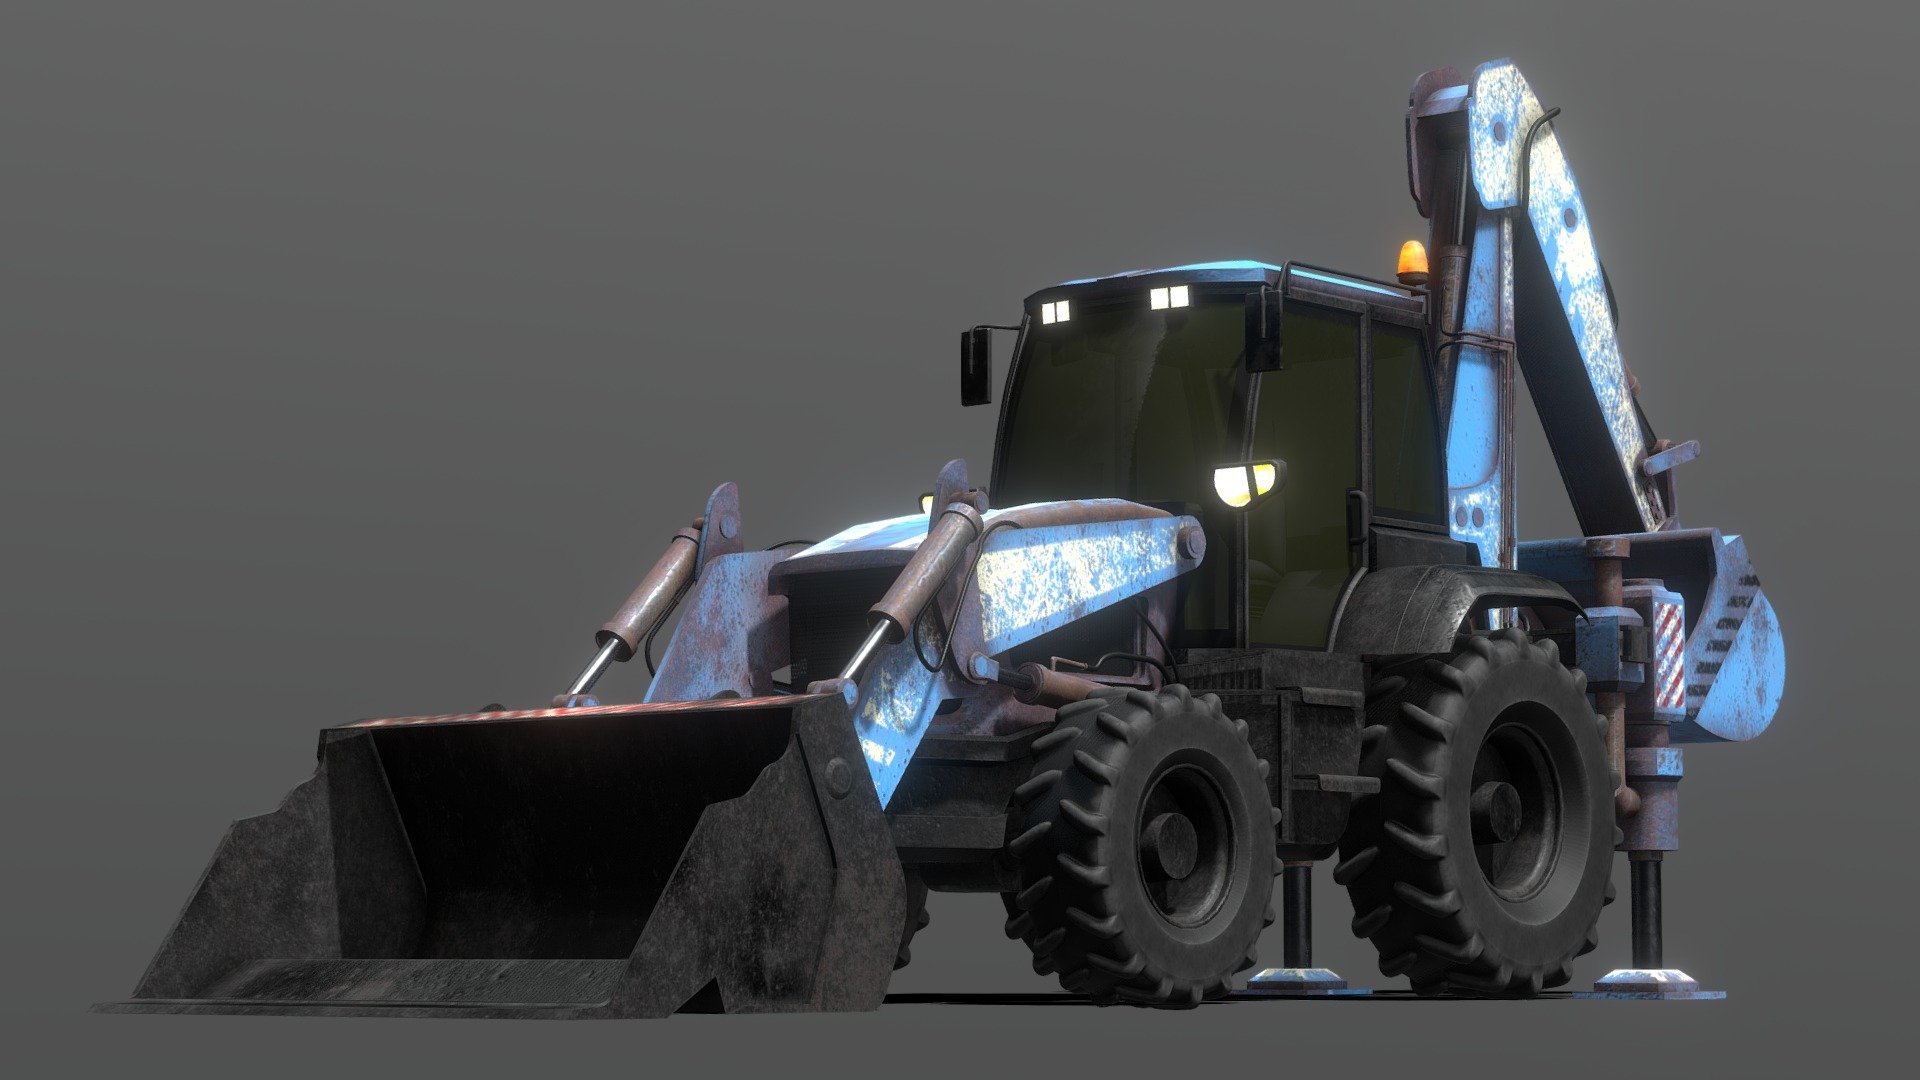 Tractor Excavator Model 01 (Blue version) - Tractor Excavator Model 01 (Blue version) - 3D model by cosm0deller_vehicles 3d model